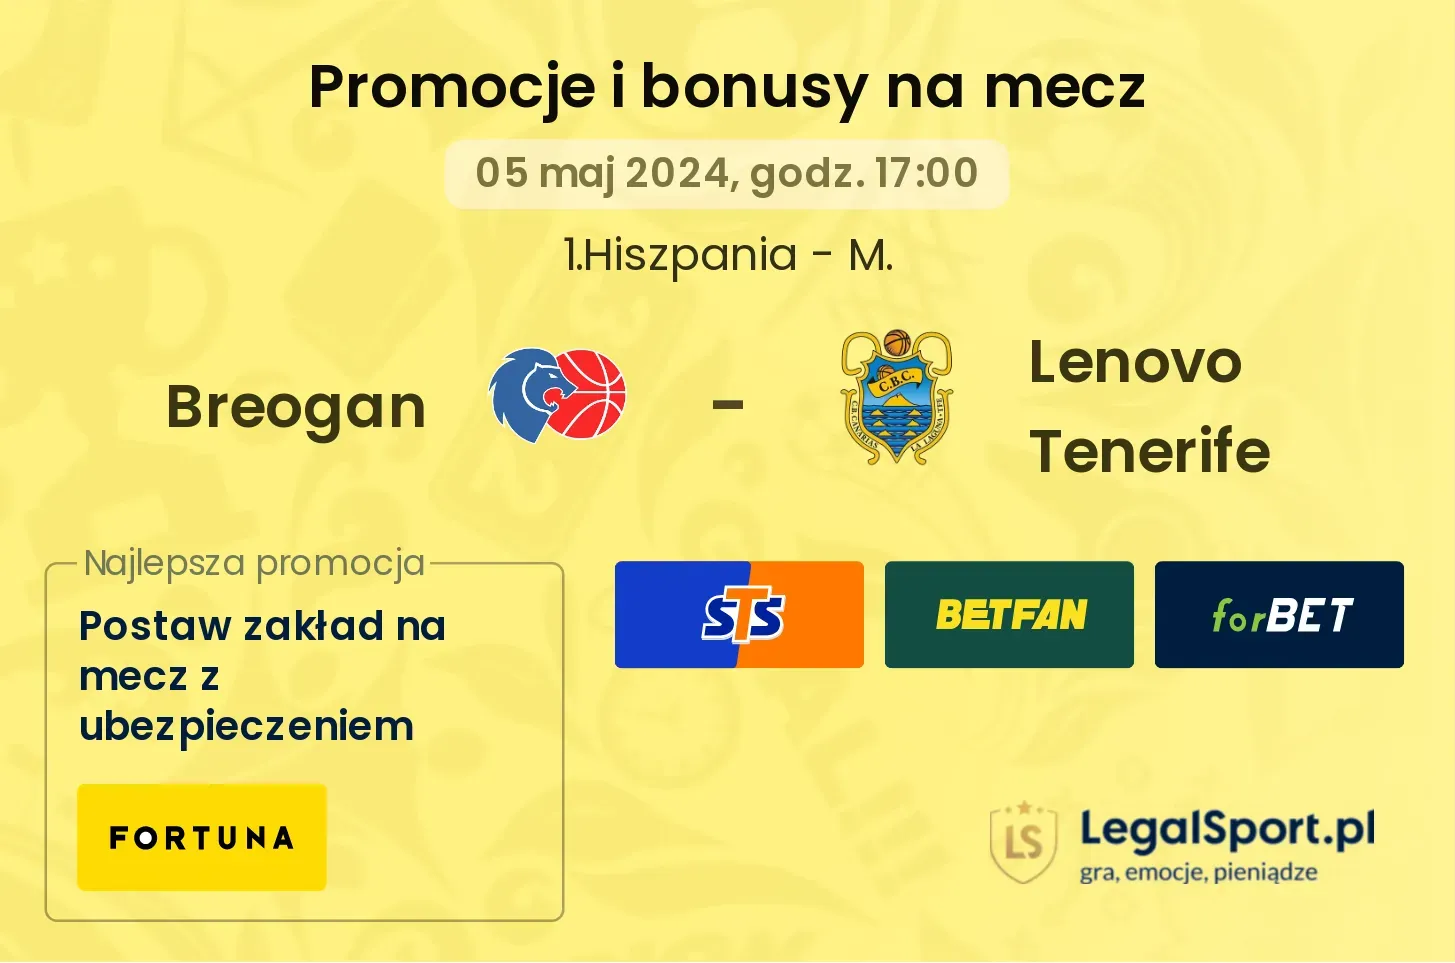 Breogan - Lenovo Tenerife promocje bonusy na mecz